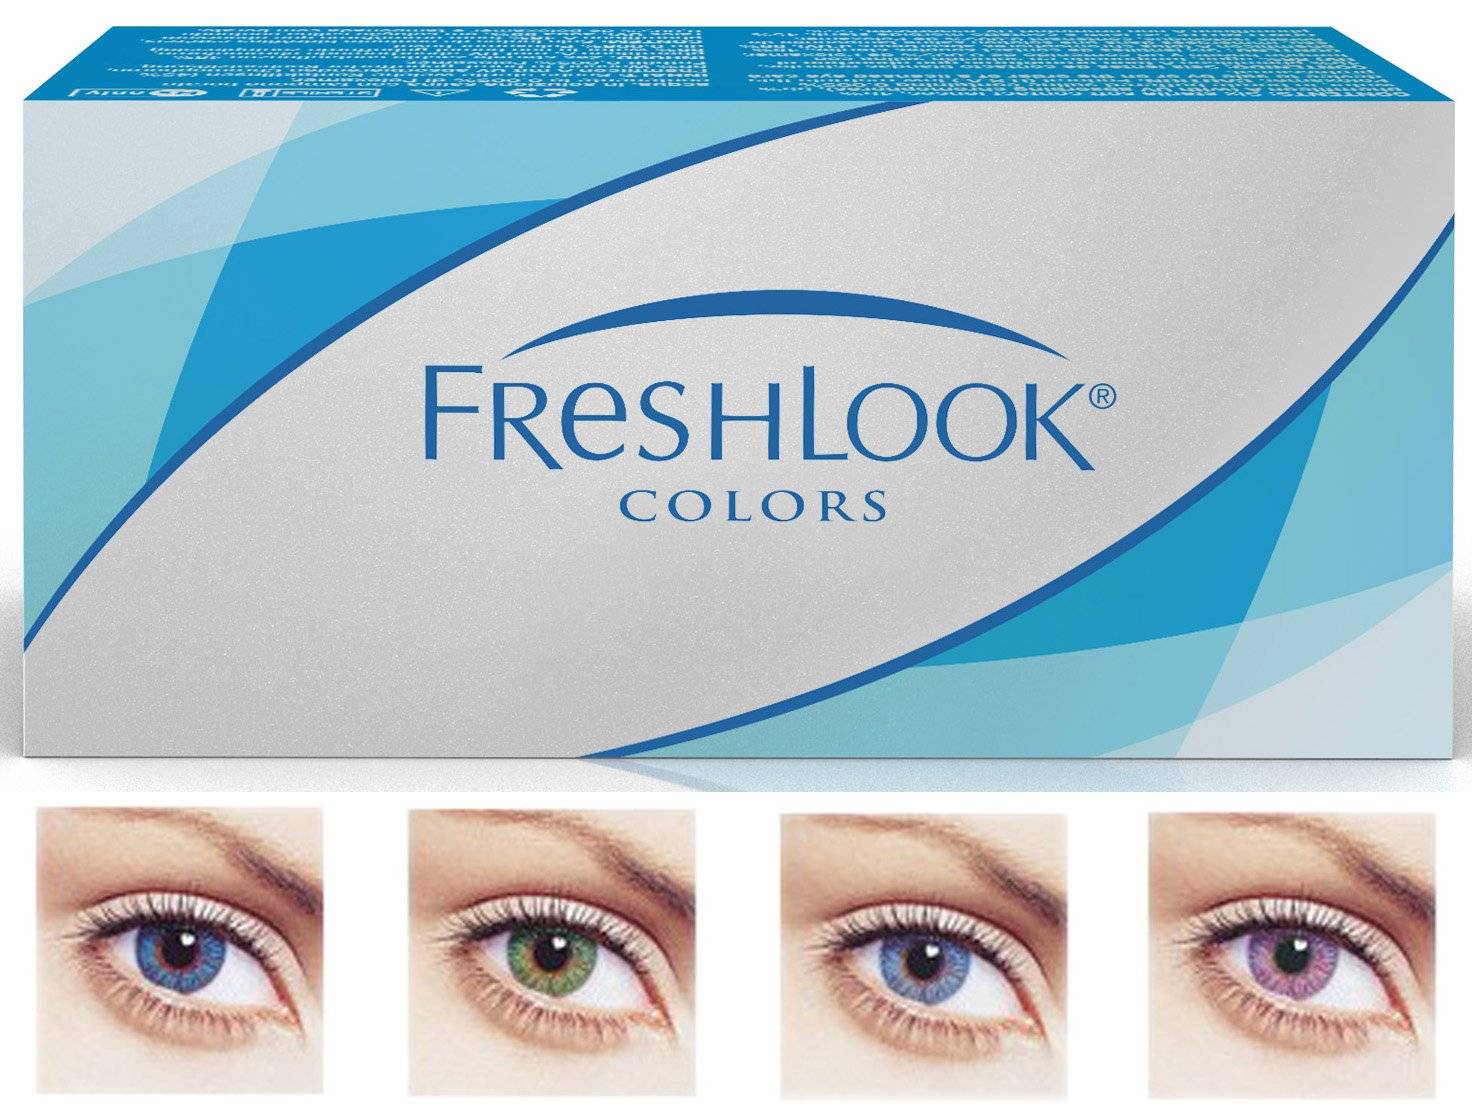 Мягкие цветные линзы freshlook colorblends: описание, инструкция и отзывы